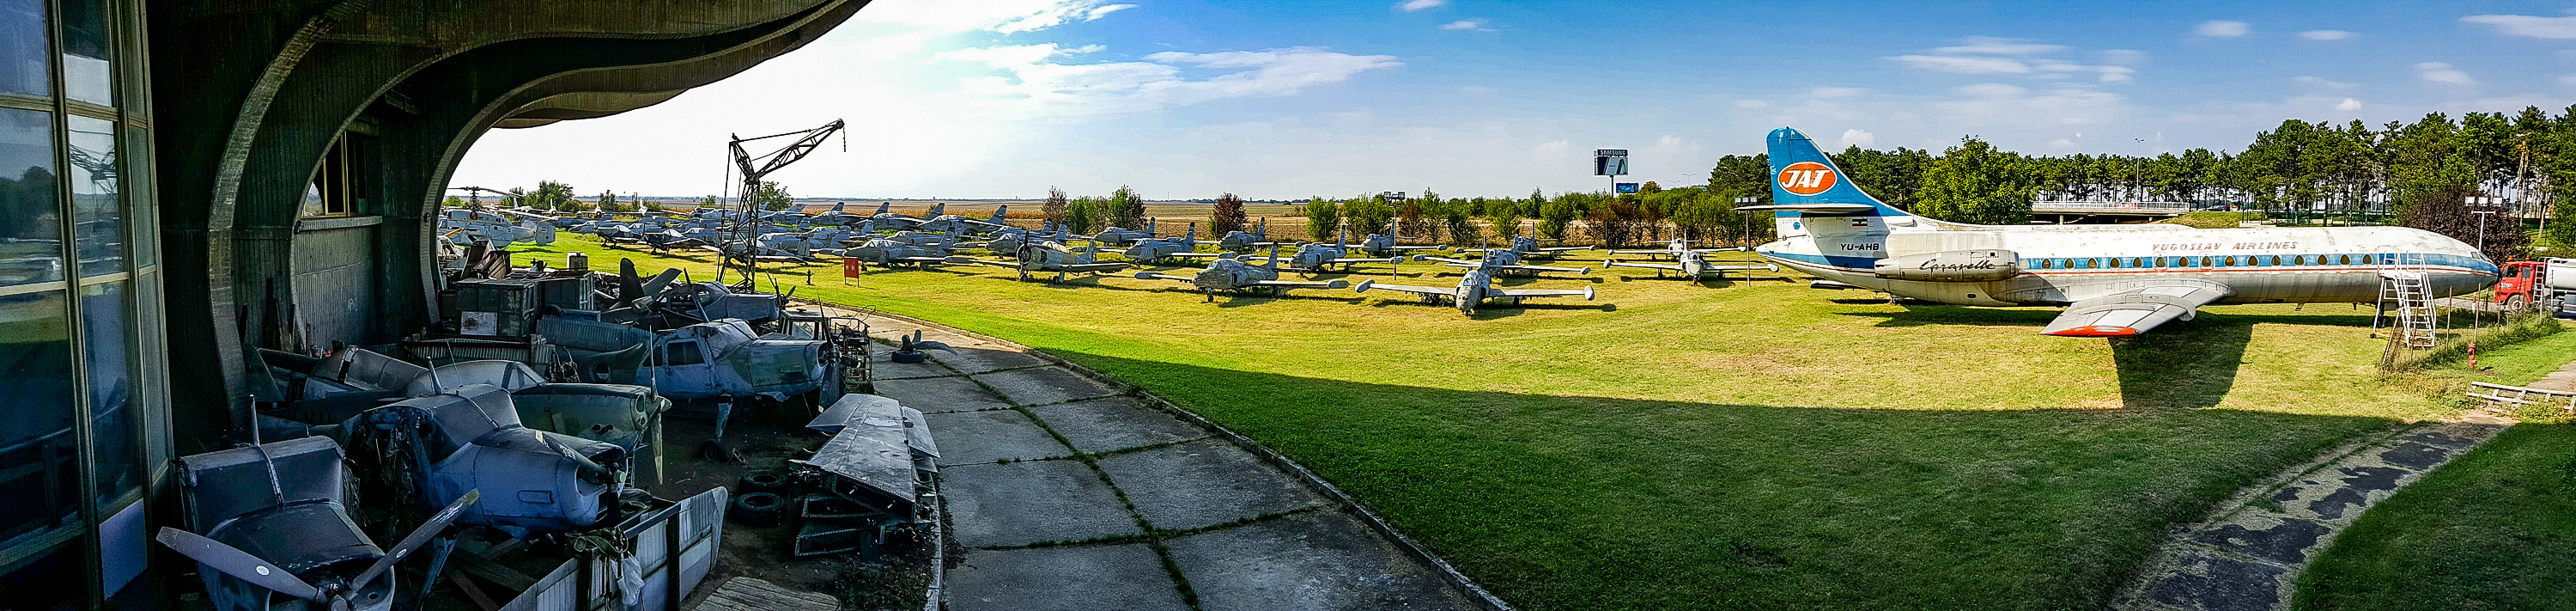 belgrade-museum-of-aviation-mid-1.jpg